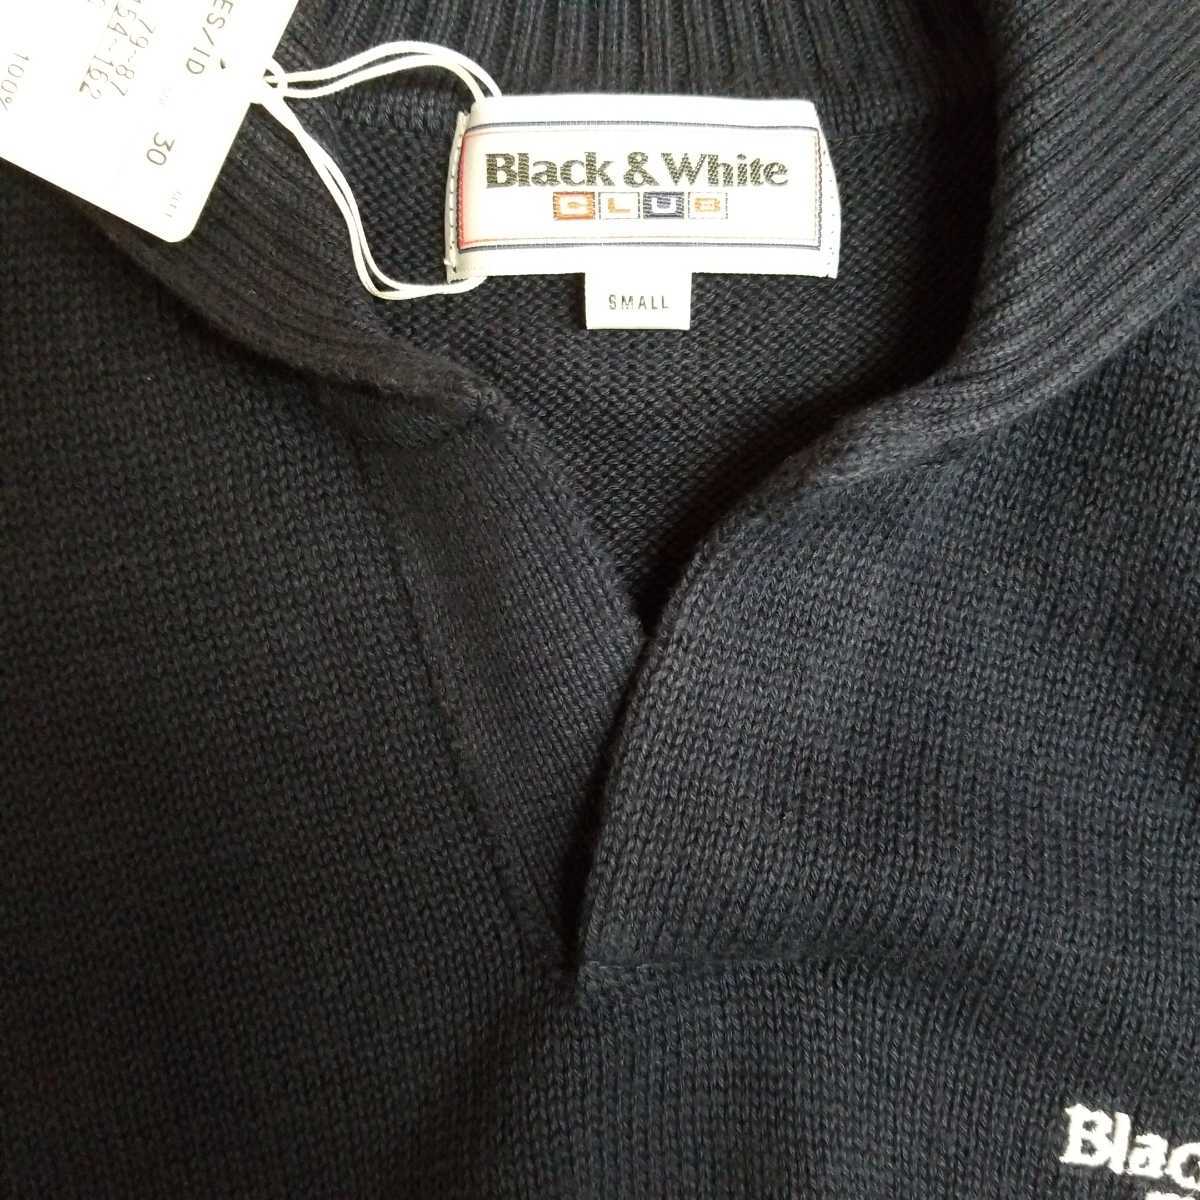 新品Black&Whiteブラック&ホワイト/メンズ半袖ポロニットセーター/ネイビー/S/￥18700(17000+税)日本製_前たて部分フリーネック仕様です